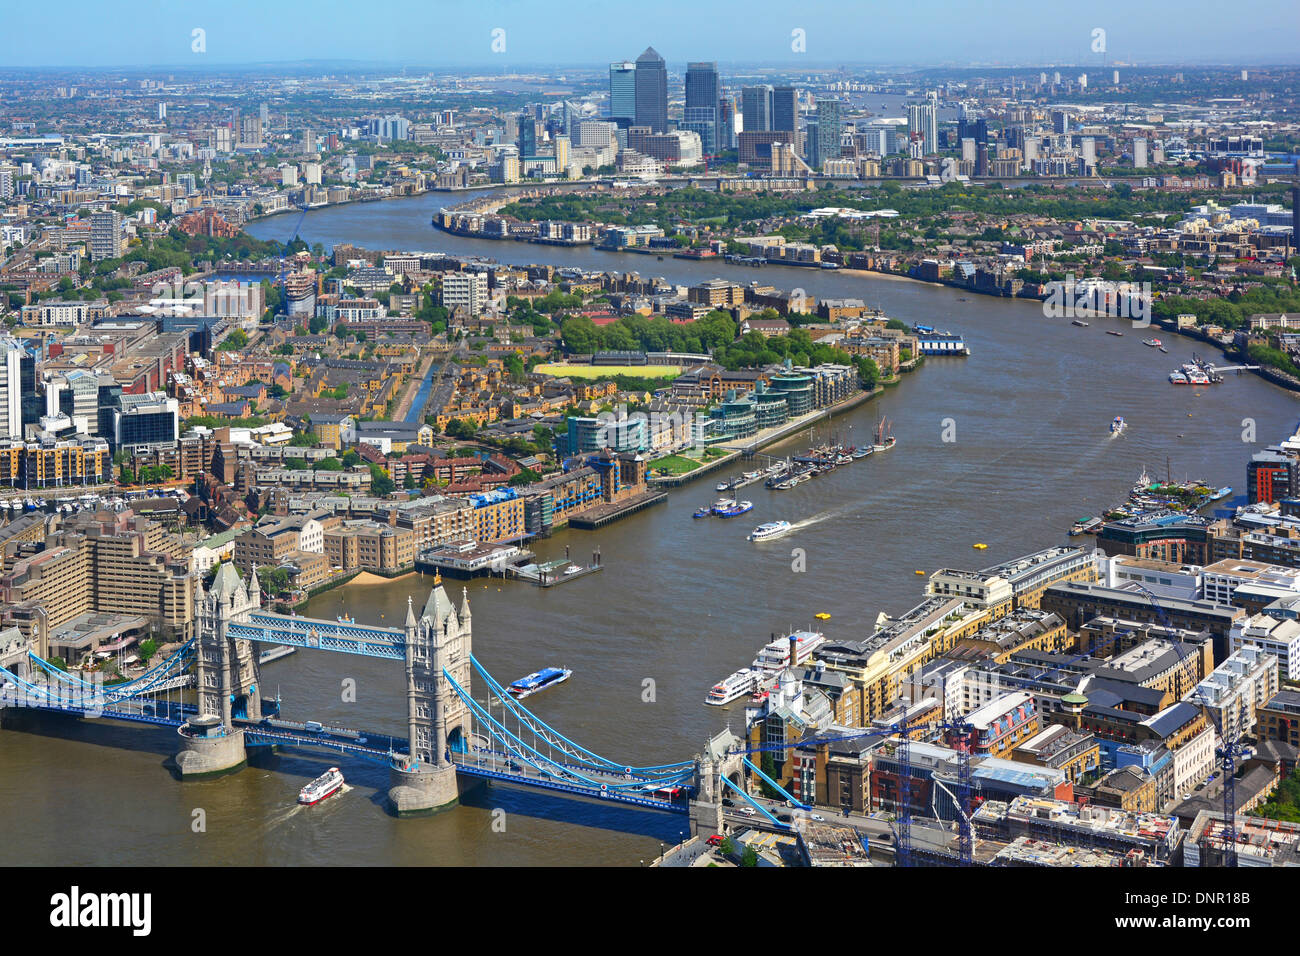 Vue aérienne du paysage urbain londonien depuis Shard à marée haute, la Tamise commence depuis l'emblématique Tower Bridge vers les gratte-ciel de Canary Wharf, Angleterre, Royaume-Uni Banque D'Images